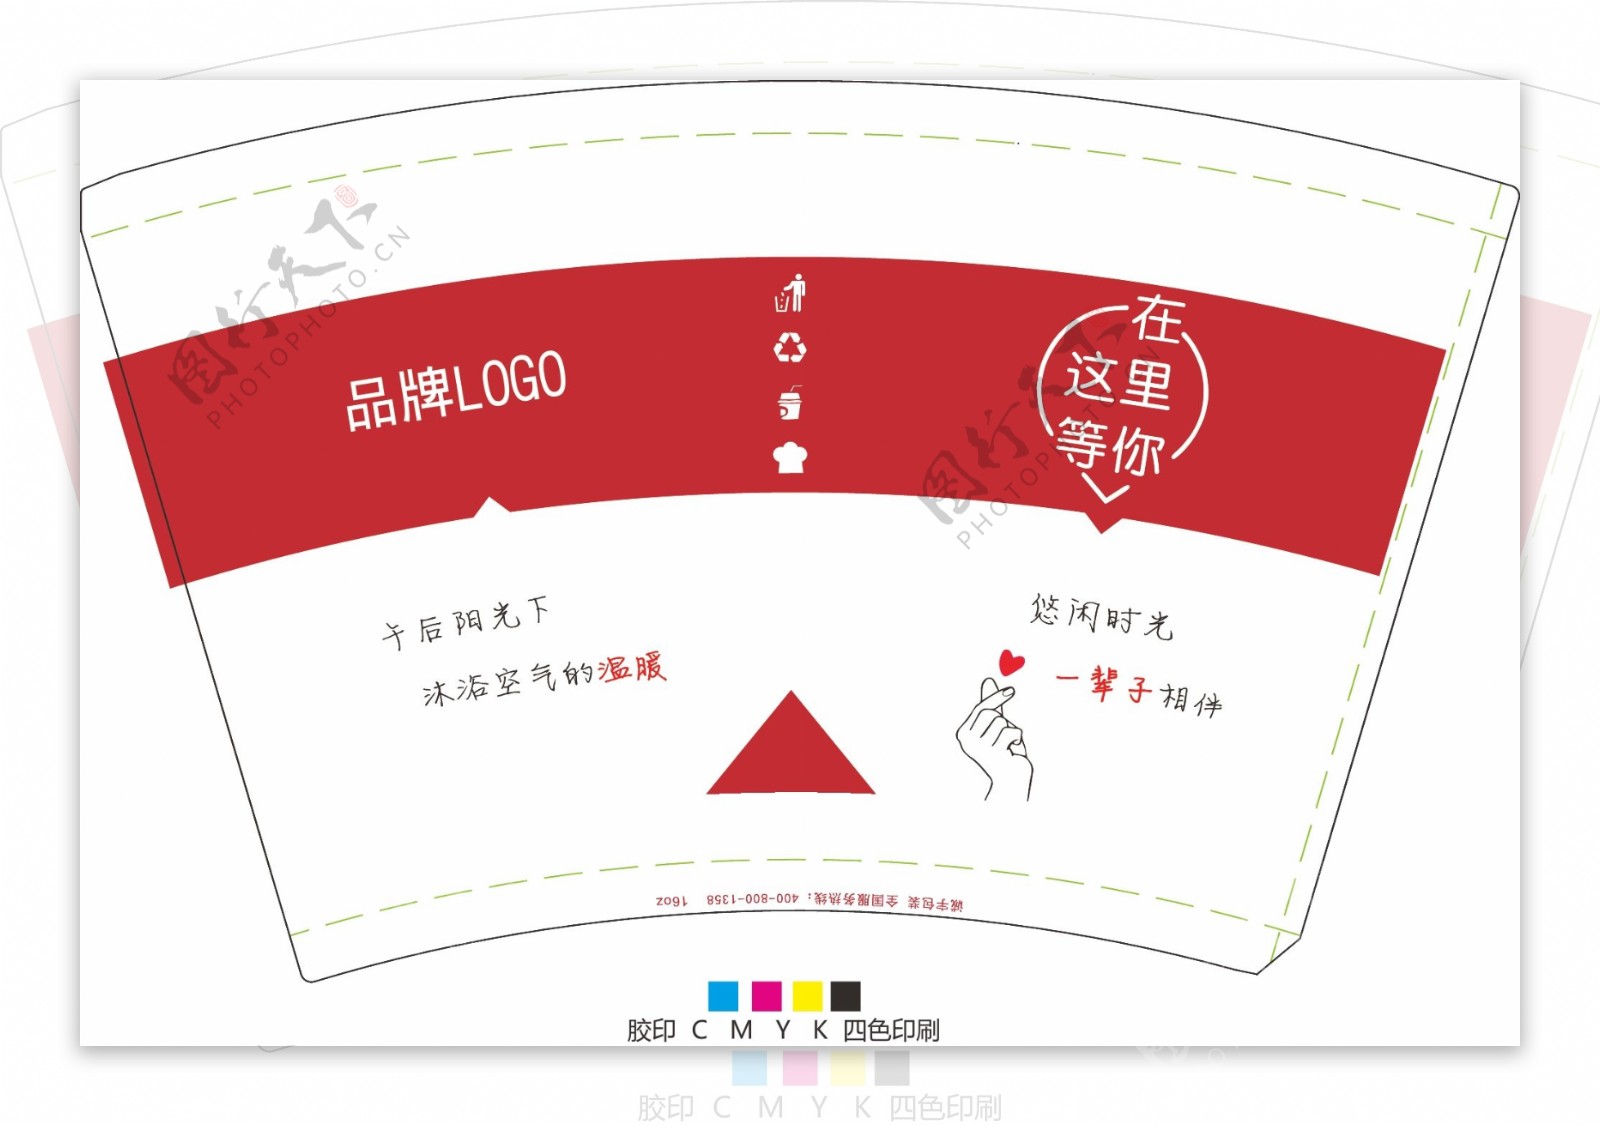 果汁奶茶饮品网红纸杯设计矢量图